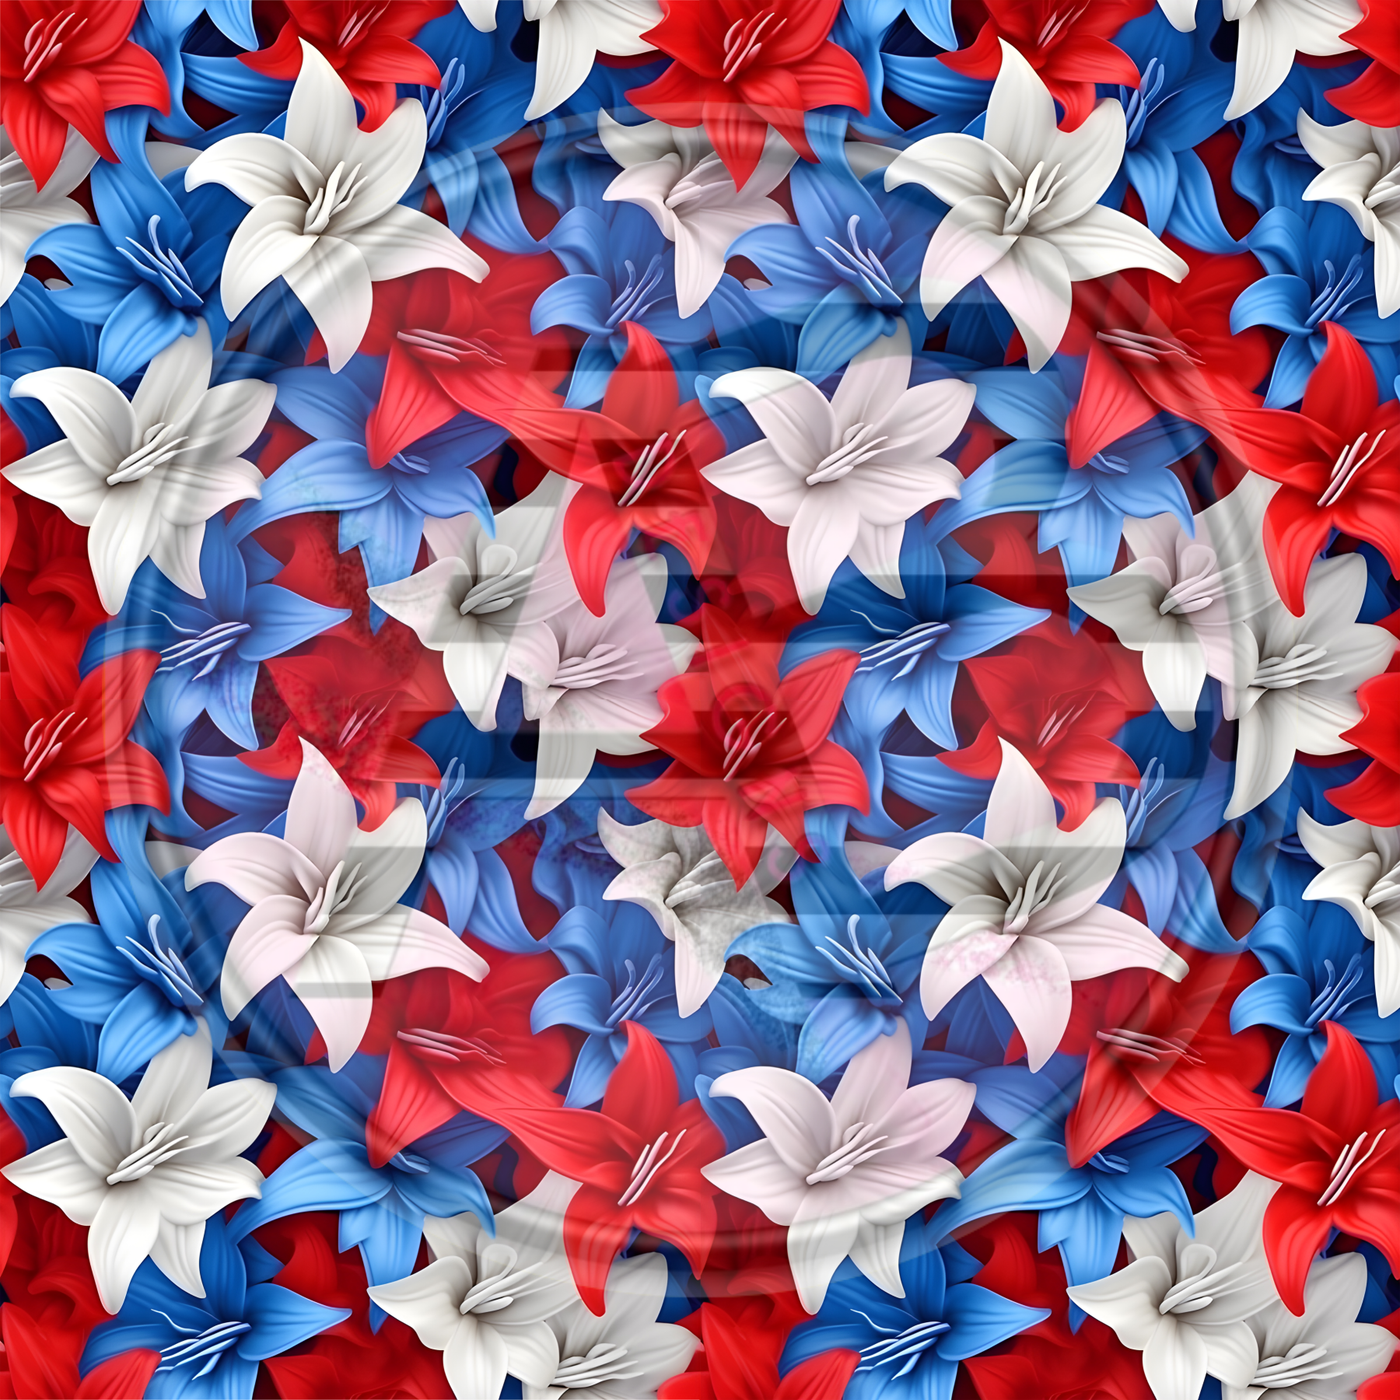 Adhesive Patterned Vinyl - Patriotic Floral 09